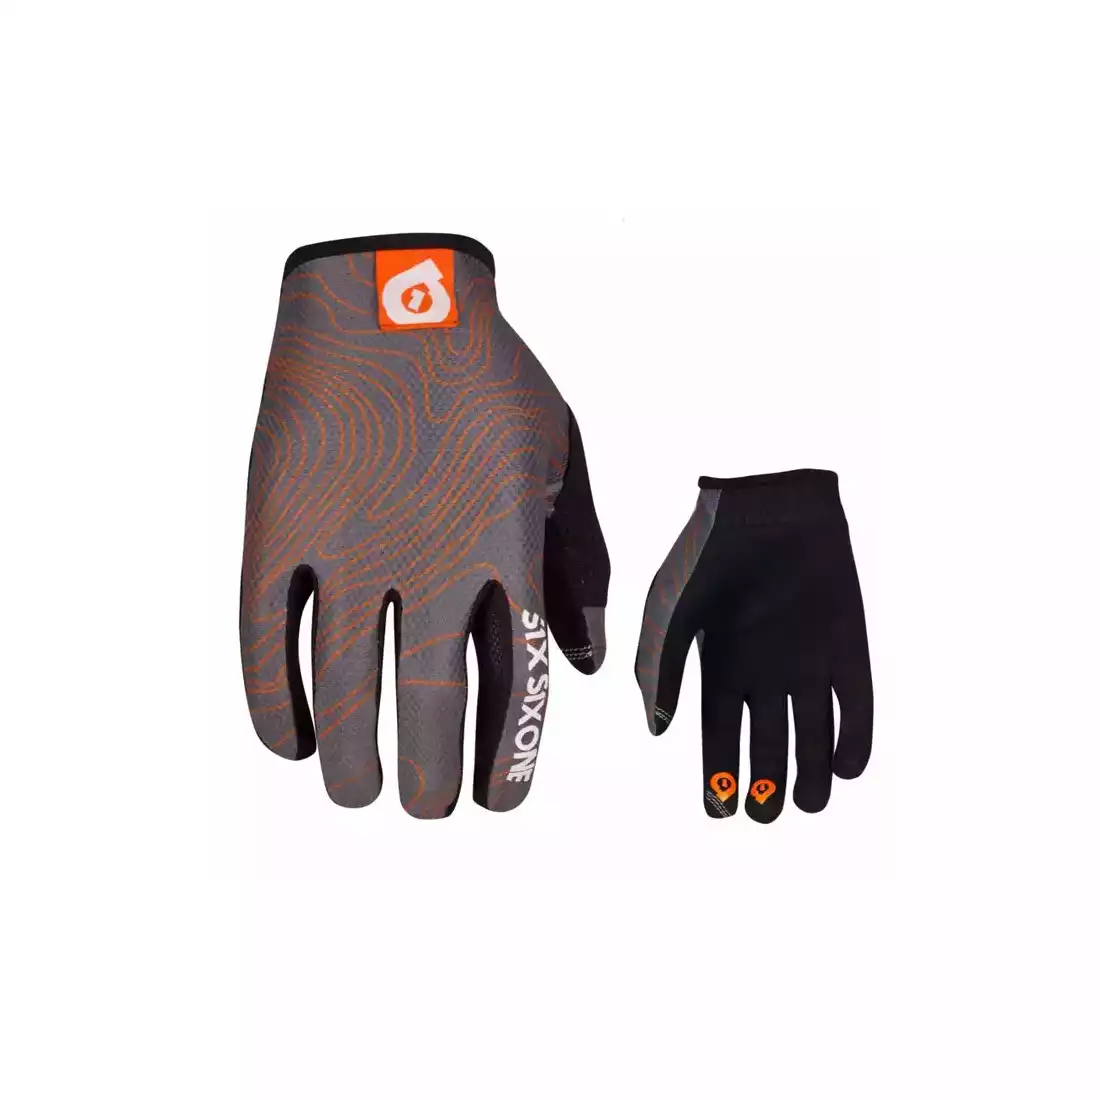 661 COMP CONTOUR men's cycling gloves, gray-orange